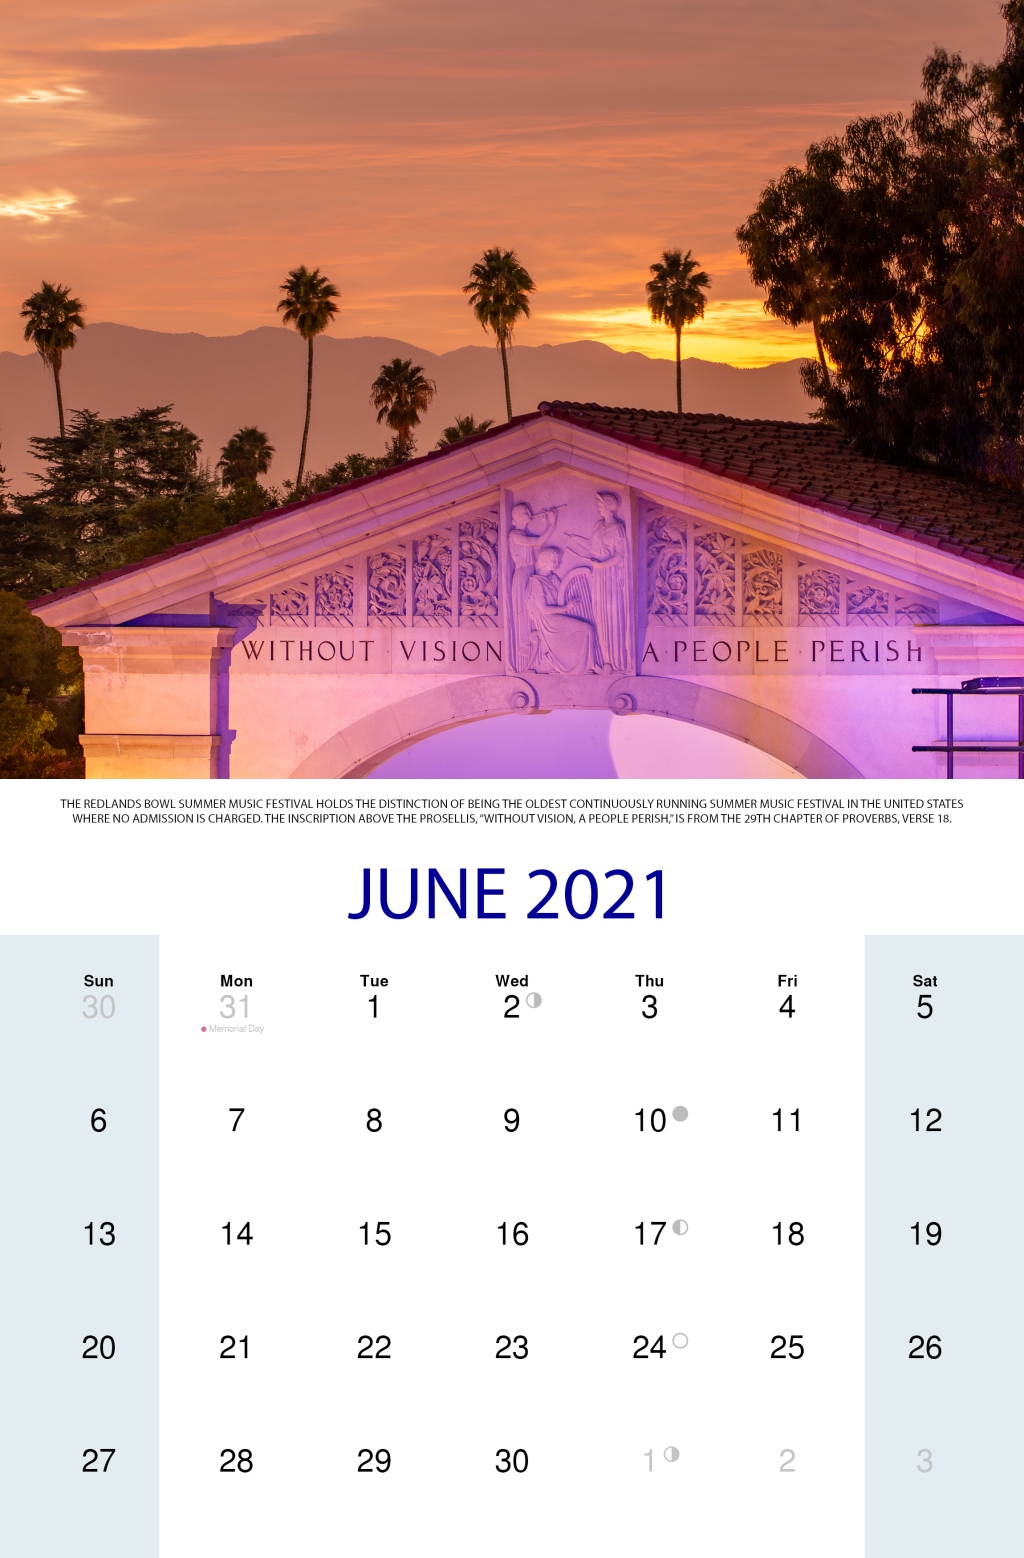 2021 Redlands Calendar